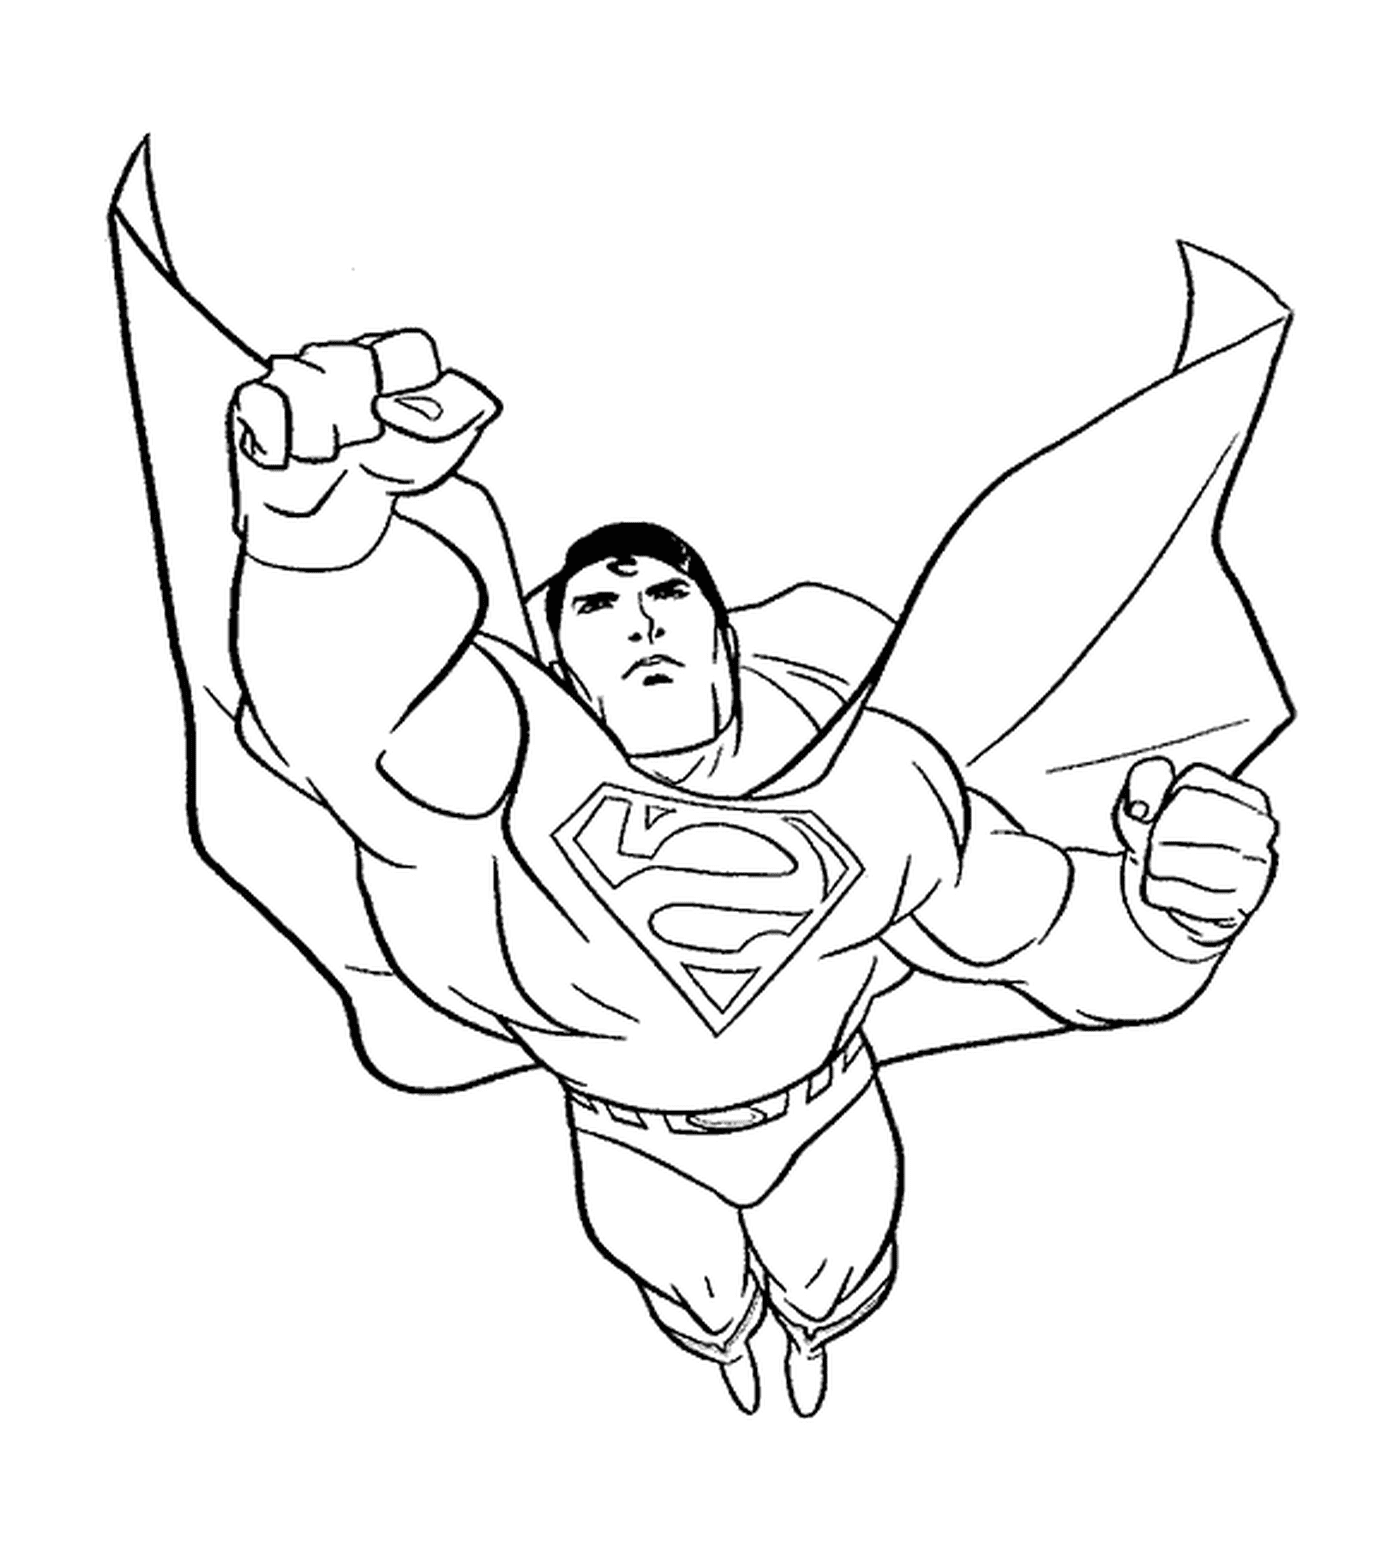  Супермен, кулак вперед 